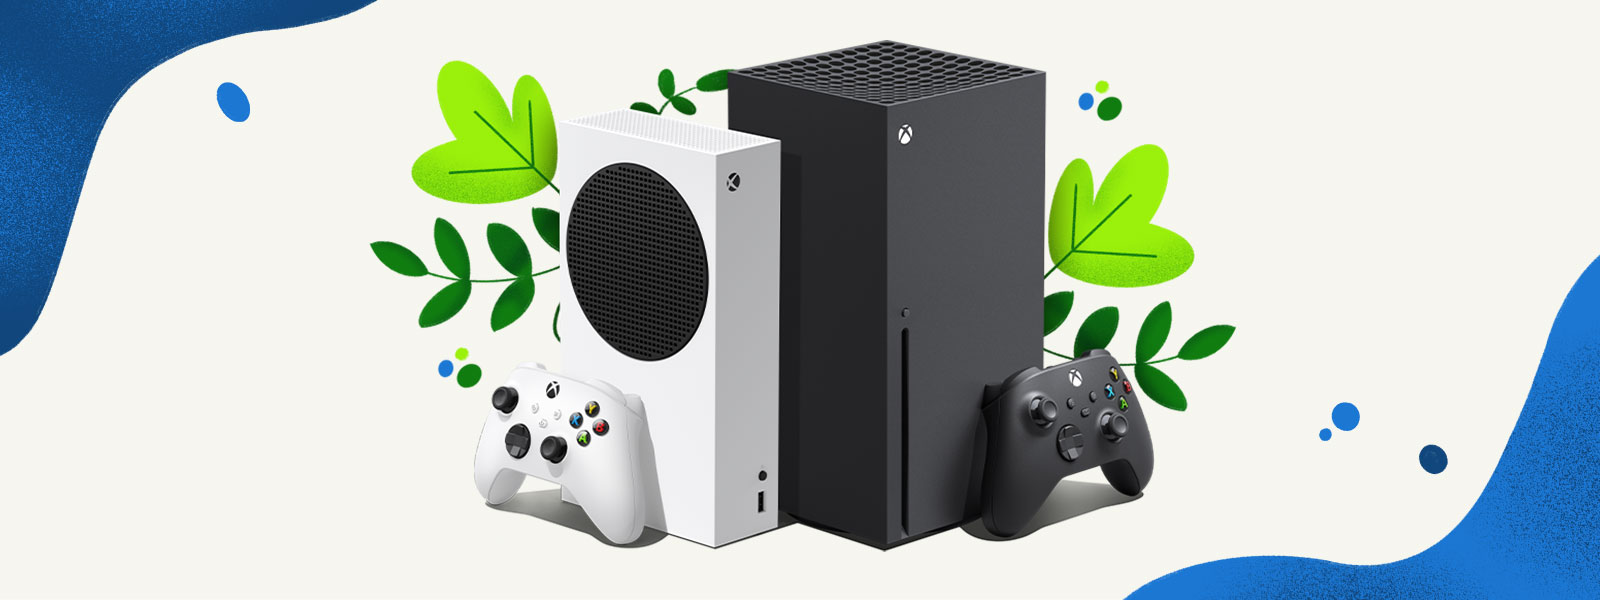 Xbox Series X- ja Xbox Series S -konsolit rinnakkain kasveja ja sinisiä vesiroiskeita esittävän koristeellisen taustan edessä.